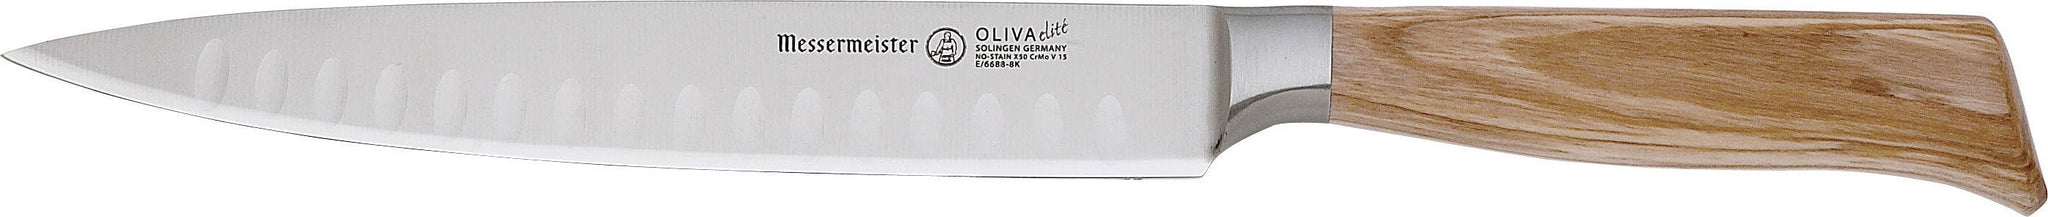 Messermeister - Oliva Elite 8" Kullenschliff Carving Knife - E/6688-8K